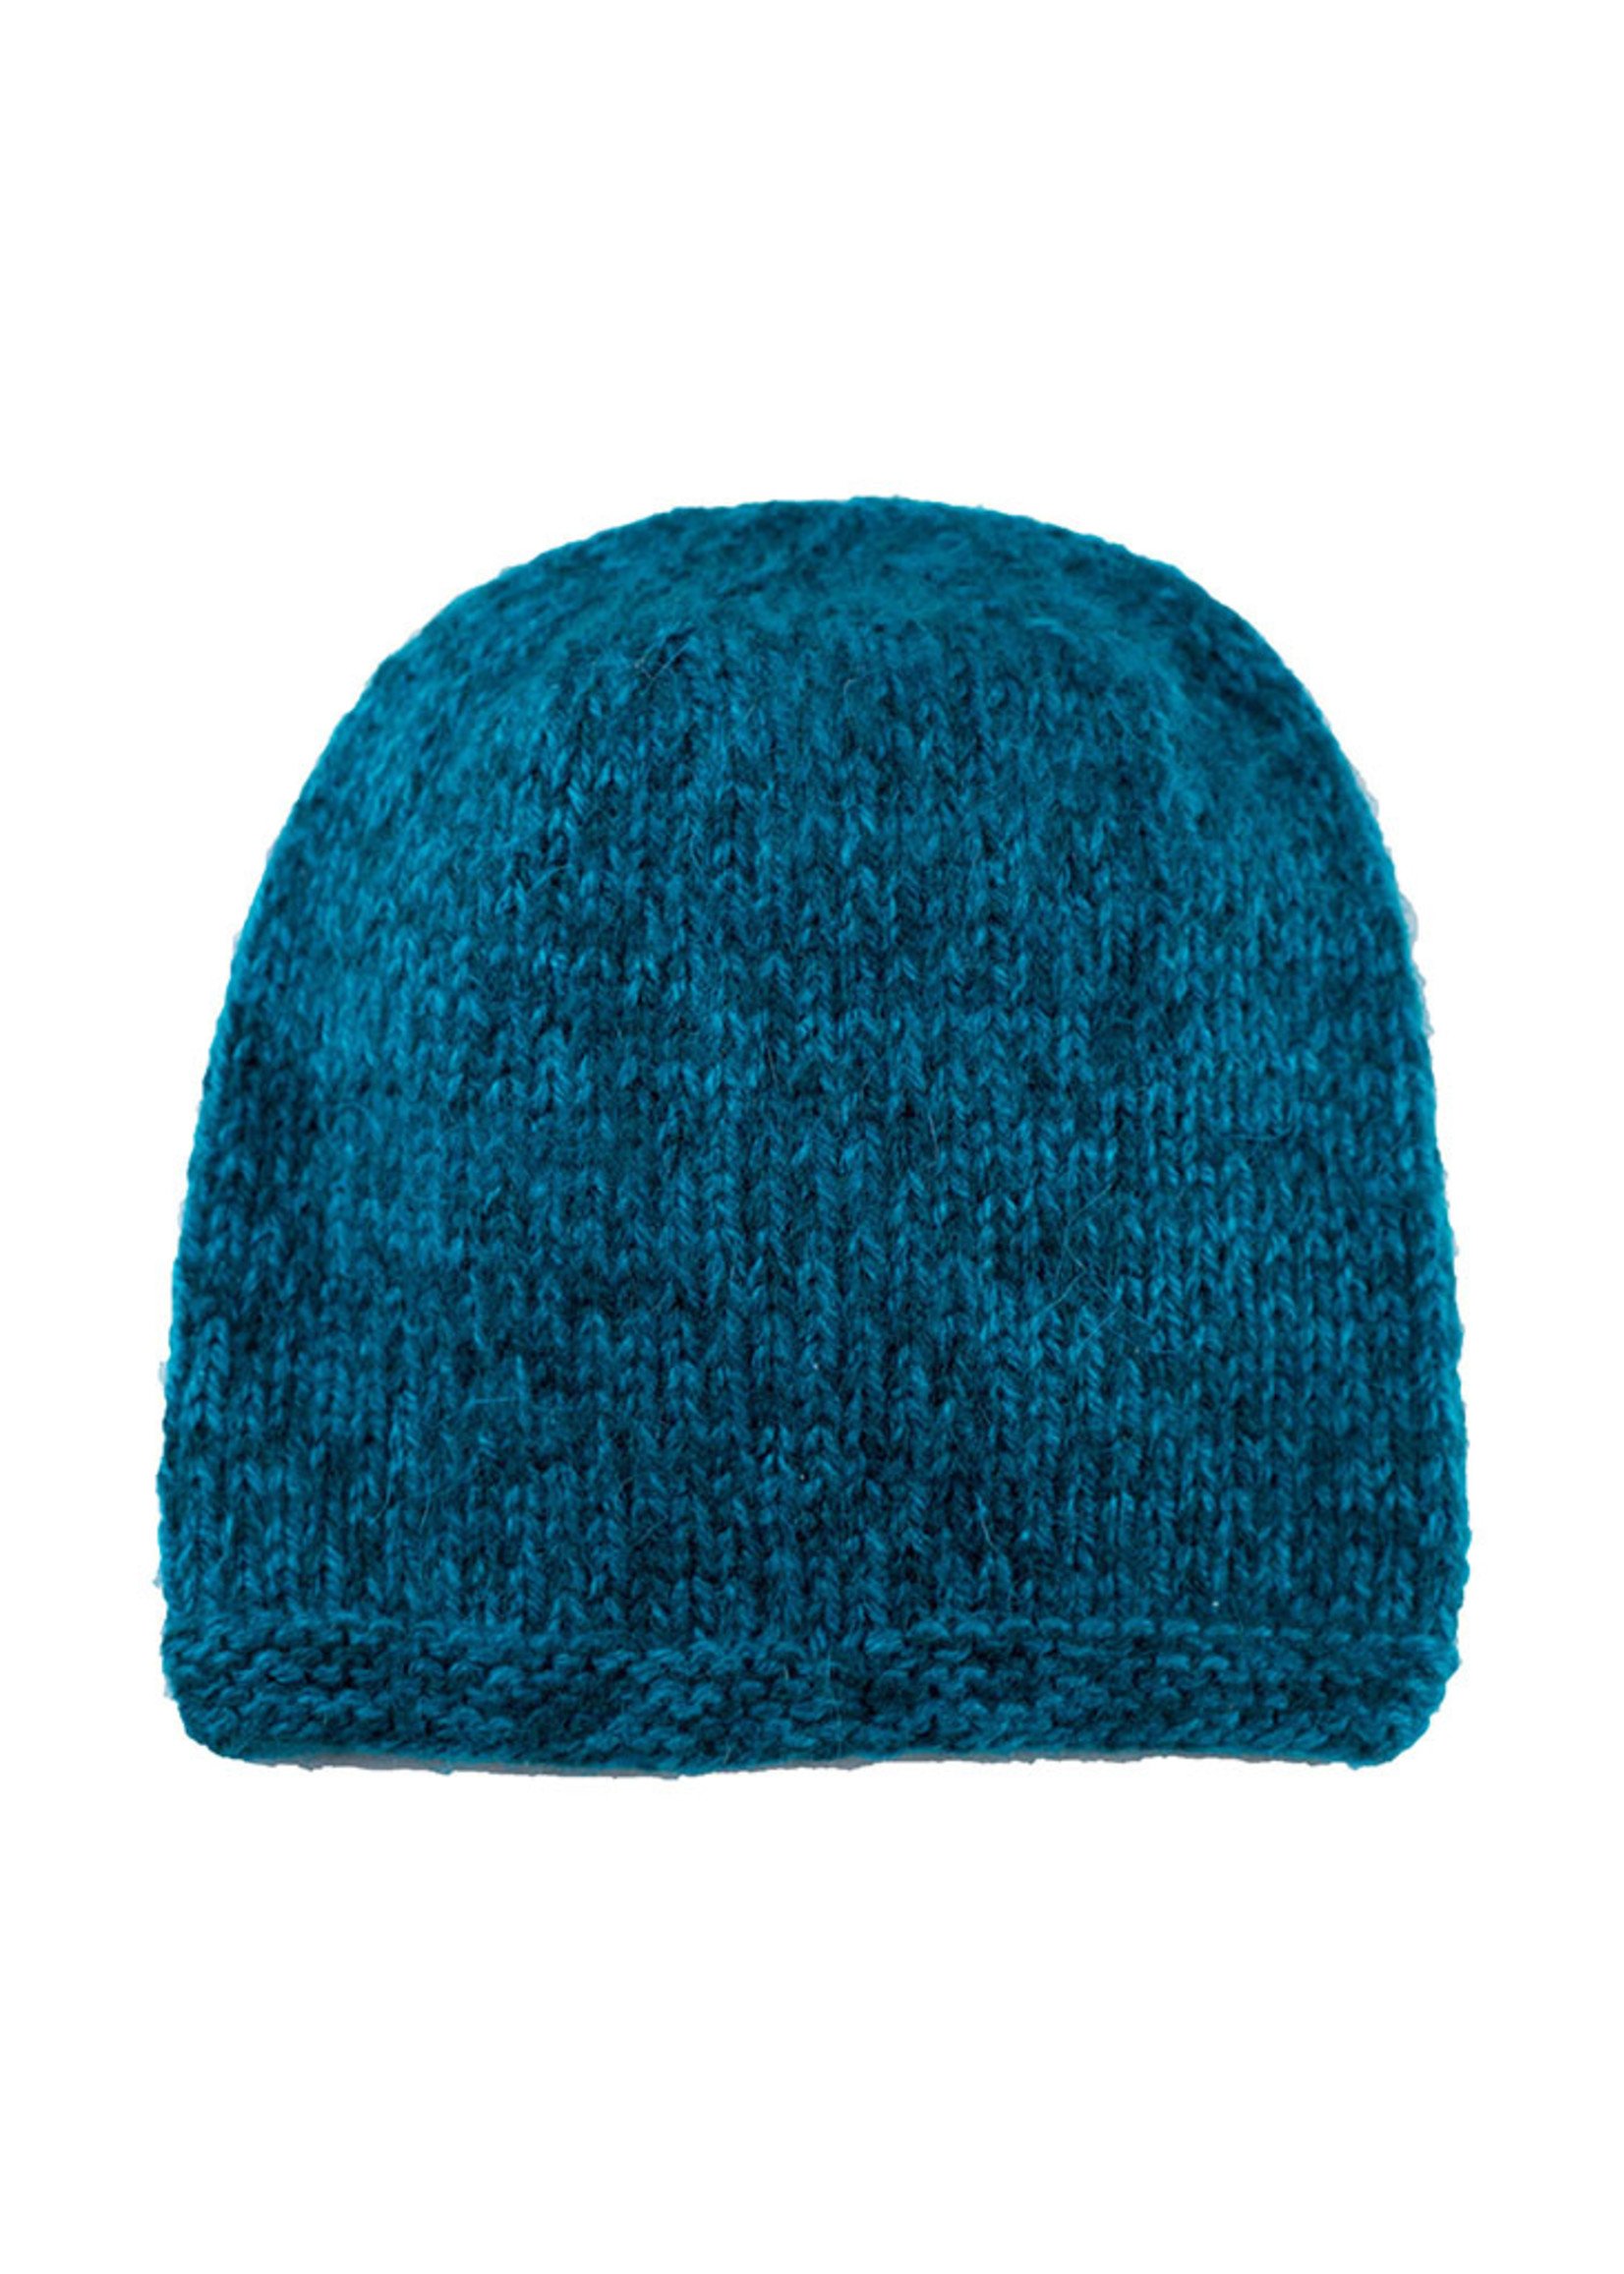 Blended Knit Hat